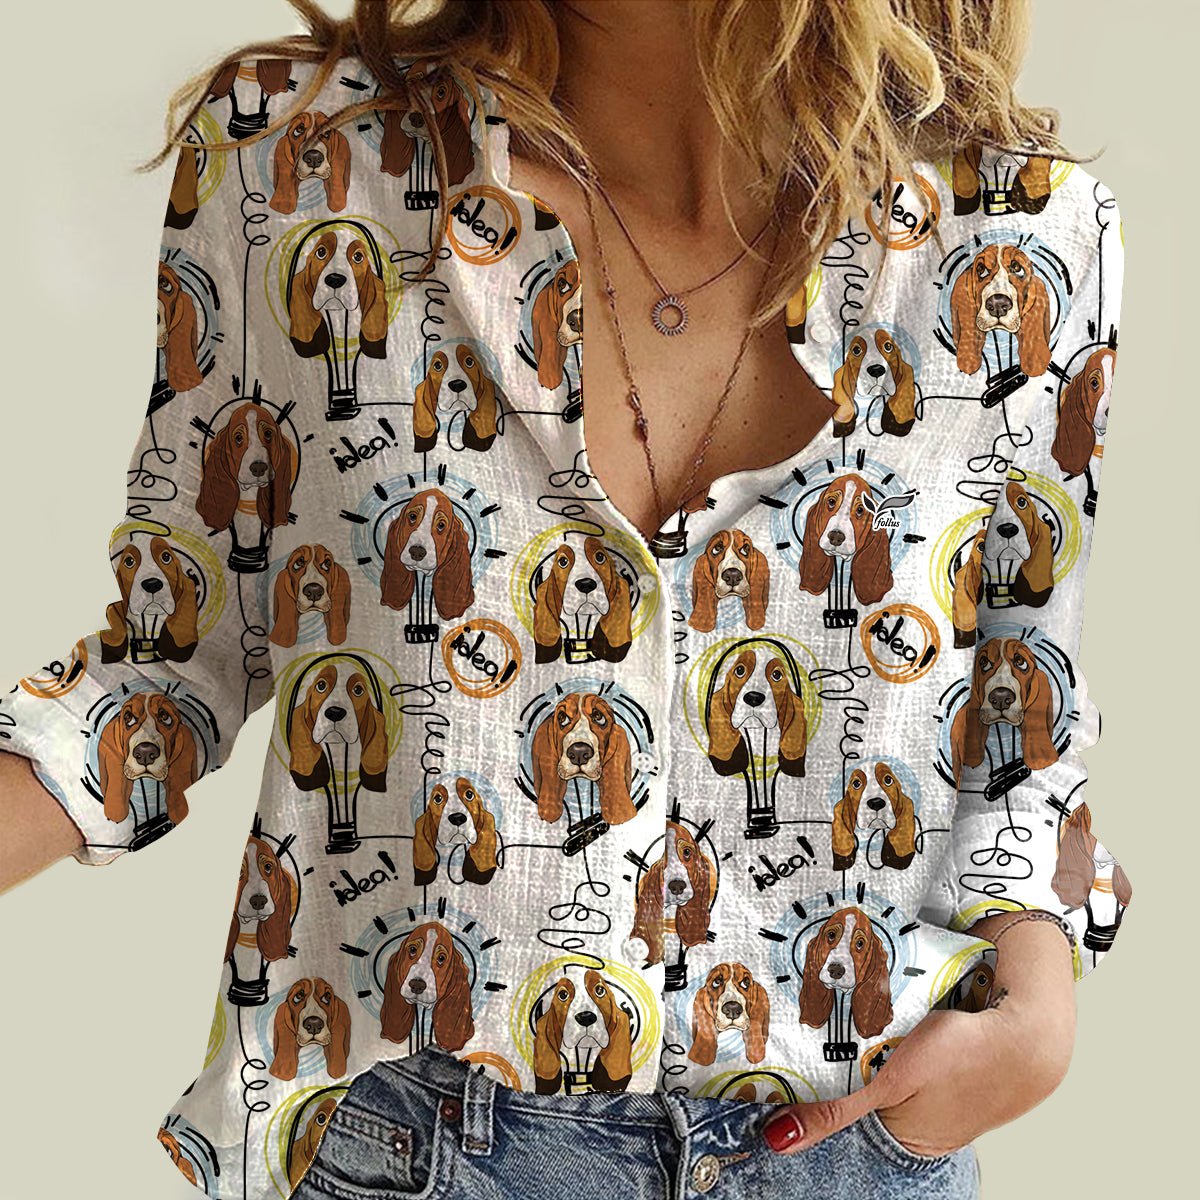 I Have An Idea - Basset Hound Women Shirt